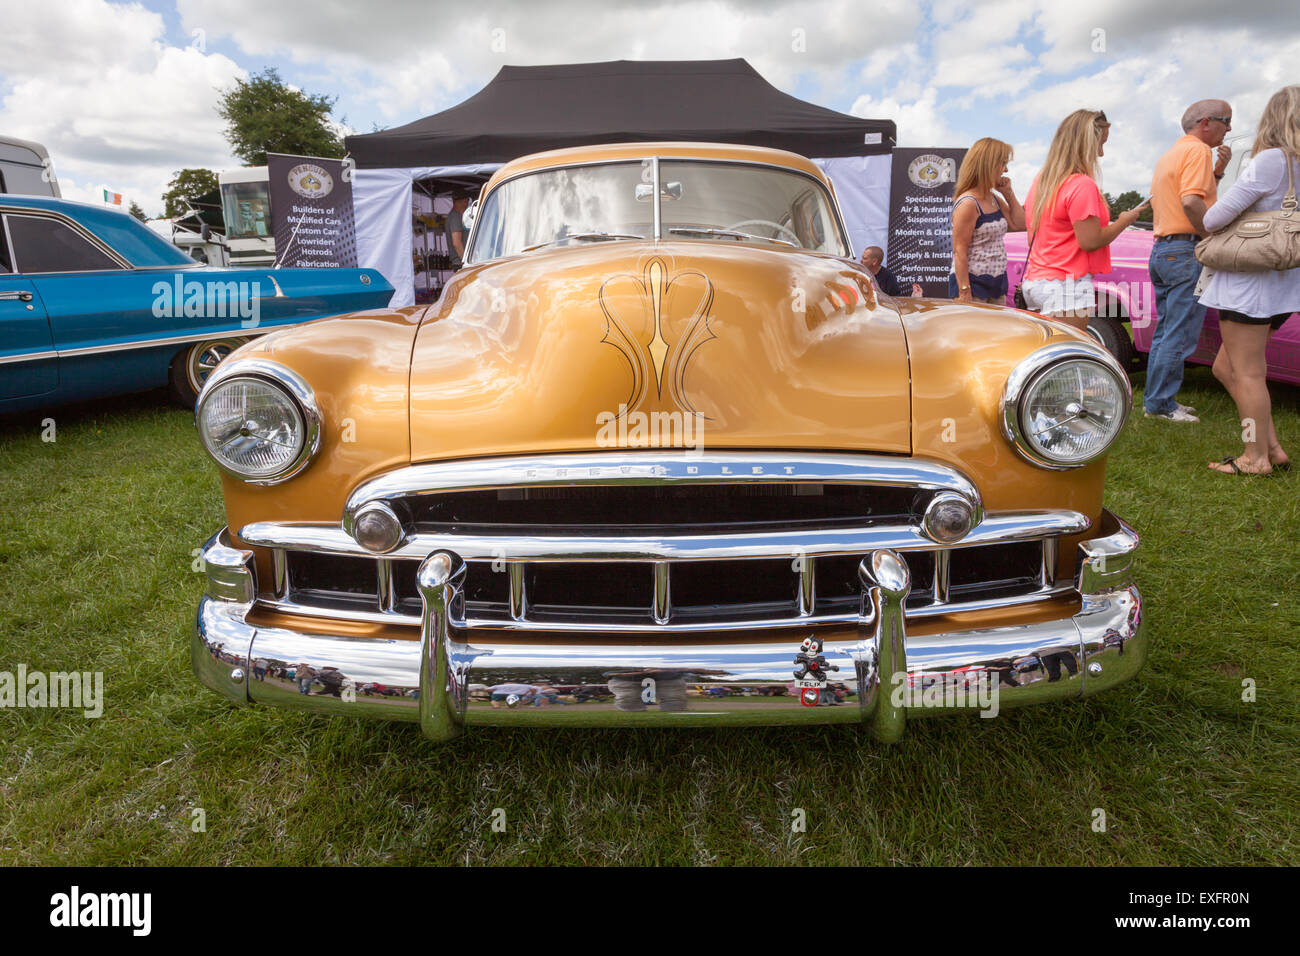 Classic American car in mostra in occasione di una mostra, REGNO UNITO Foto Stock